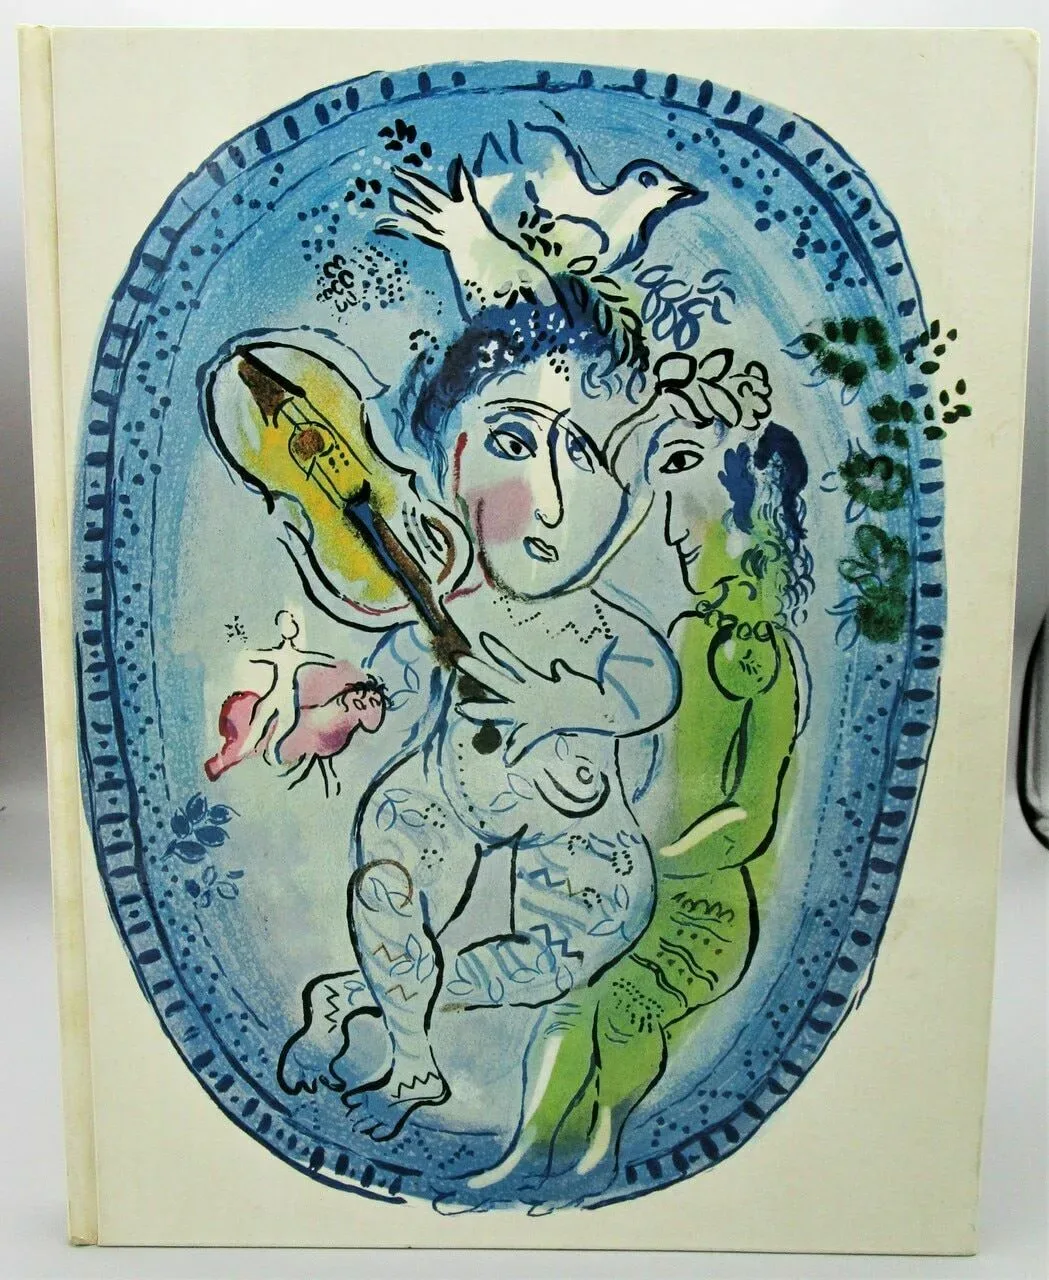 XXe Siecle No 26 Panorama 66, Chagall & Da Silva 1966